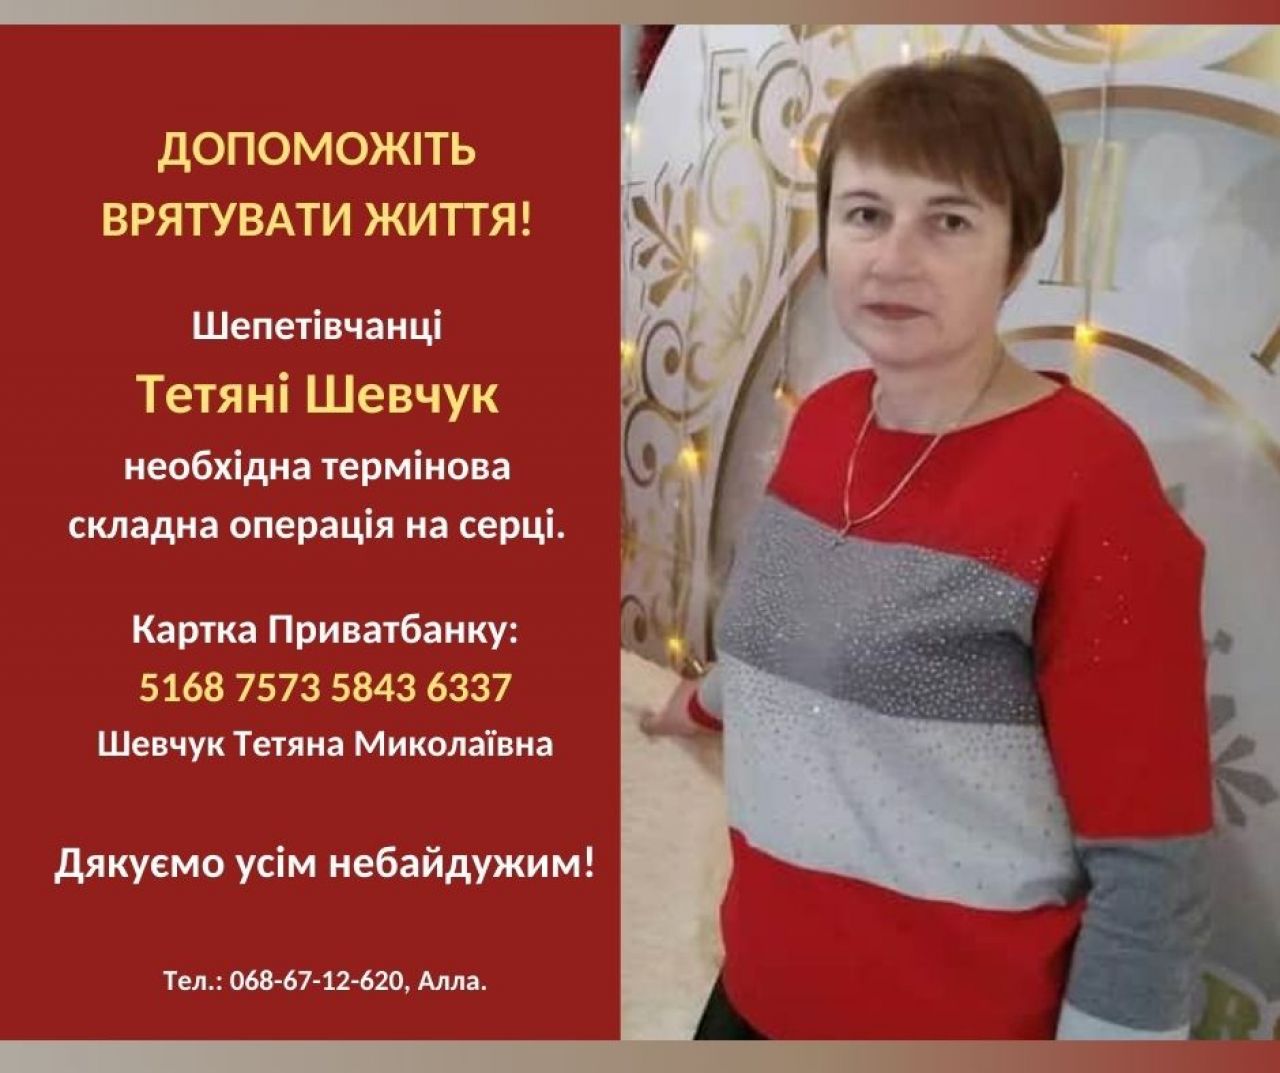 Допоможіть врятувати Тетяну Шевчук